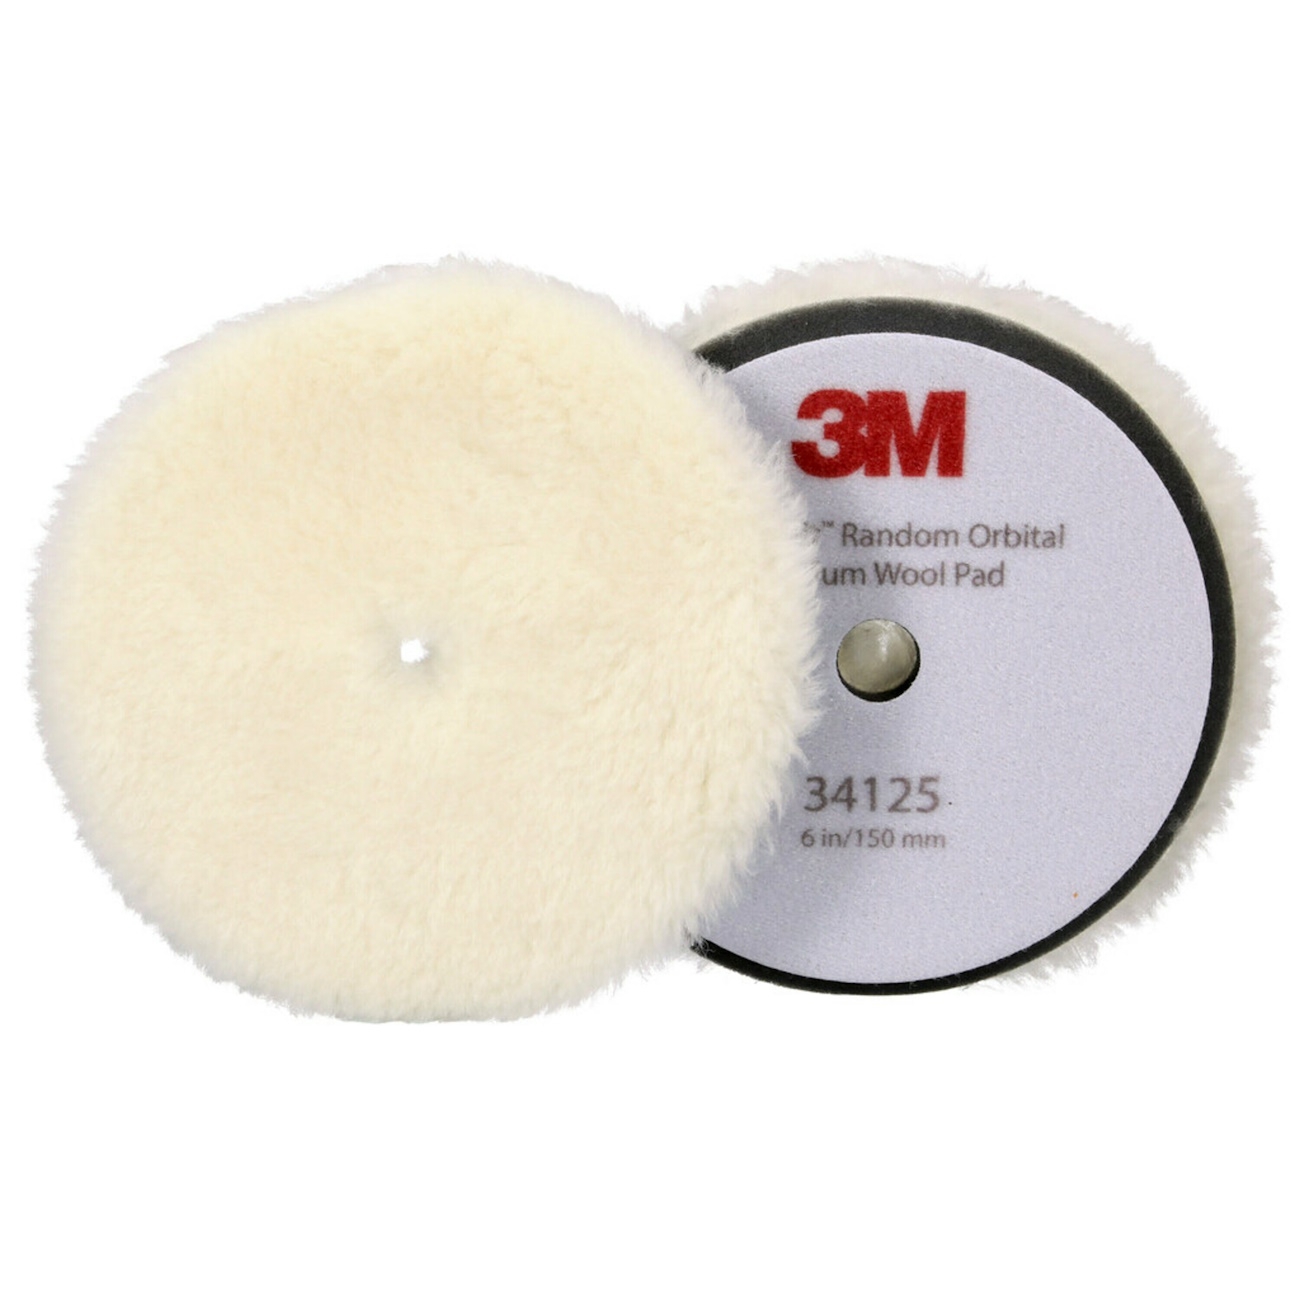 3M Perfect-it almohadilla pulidora con piel pulidora para pulidora excéntrica, mediana, blanca, 150 mm, 34125 (paquete = 2 piezas)